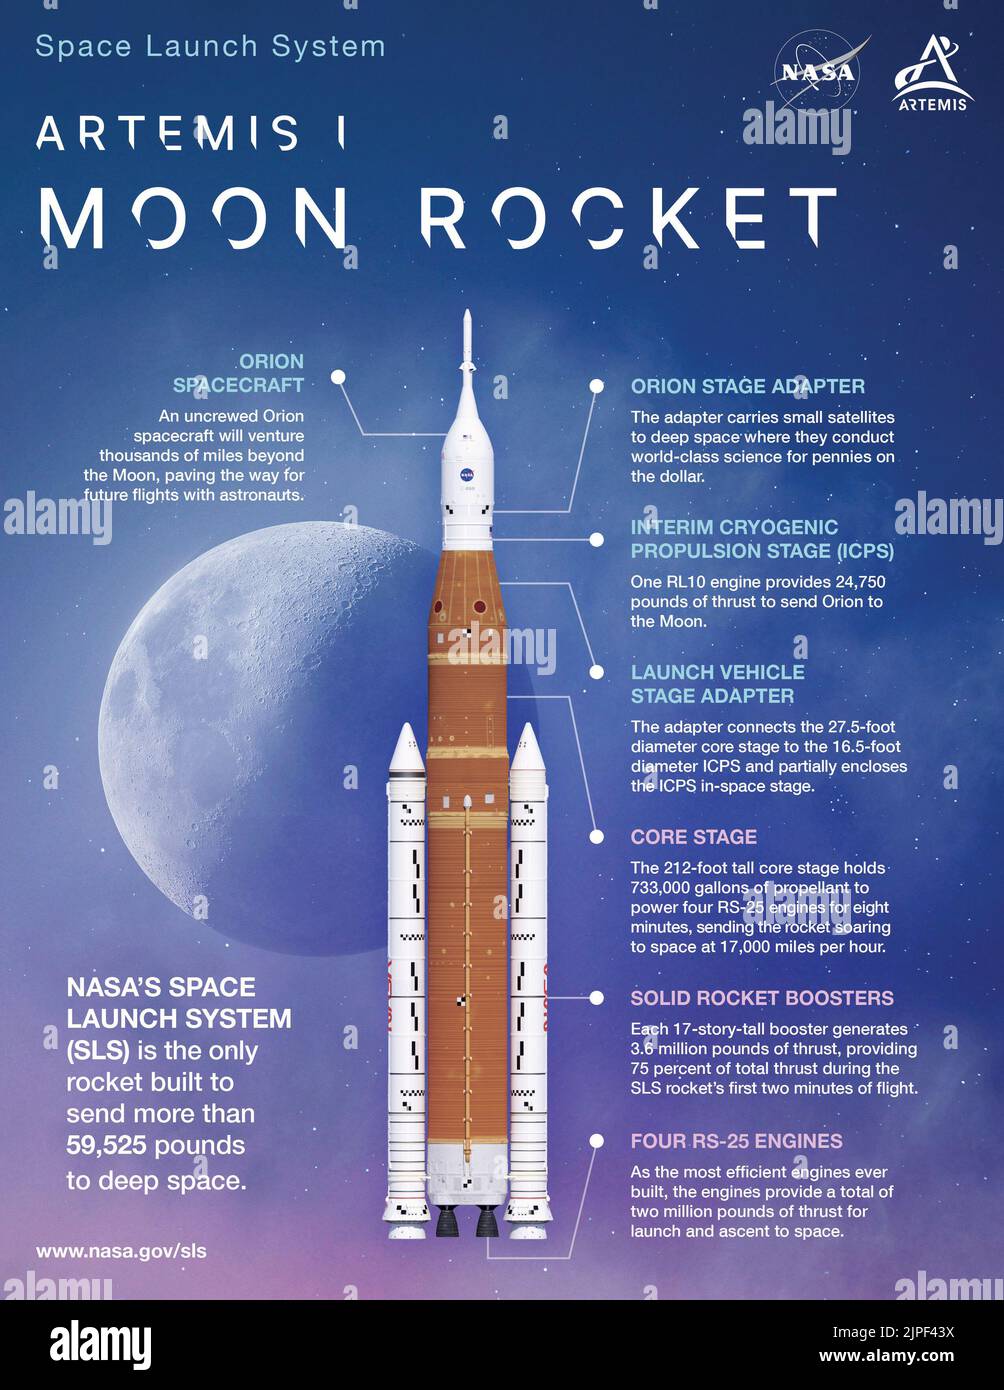 Centro Espacial Kennedy, Florida, EE.UU. 9th de Ago de 2022. El Sistema de Lanzamiento Espacial (SLS) de la NASA es el cohete más poderoso que la NASA ha construido. Es el único cohete que puede enviar la nave espacial Orion, astronautas y suministros más allá de la órbita de la Tierra a la Luna en una sola misión. Cada elemento principal de SLS la etapa central, motores RS-25, propulsores de cohetes sólidos, etapa de propulsión criogénica provisional, adaptador de etapa de vehículo de lanzamiento, Y el adaptador de etapa Orion cumple un propósito único. El primer vuelo de SLS Artemis voy a lanzar desde el Centro Espacial Kennedy de la NASA en Florida y enviar una nave espacial Orion sin tripulación a l Foto de stock